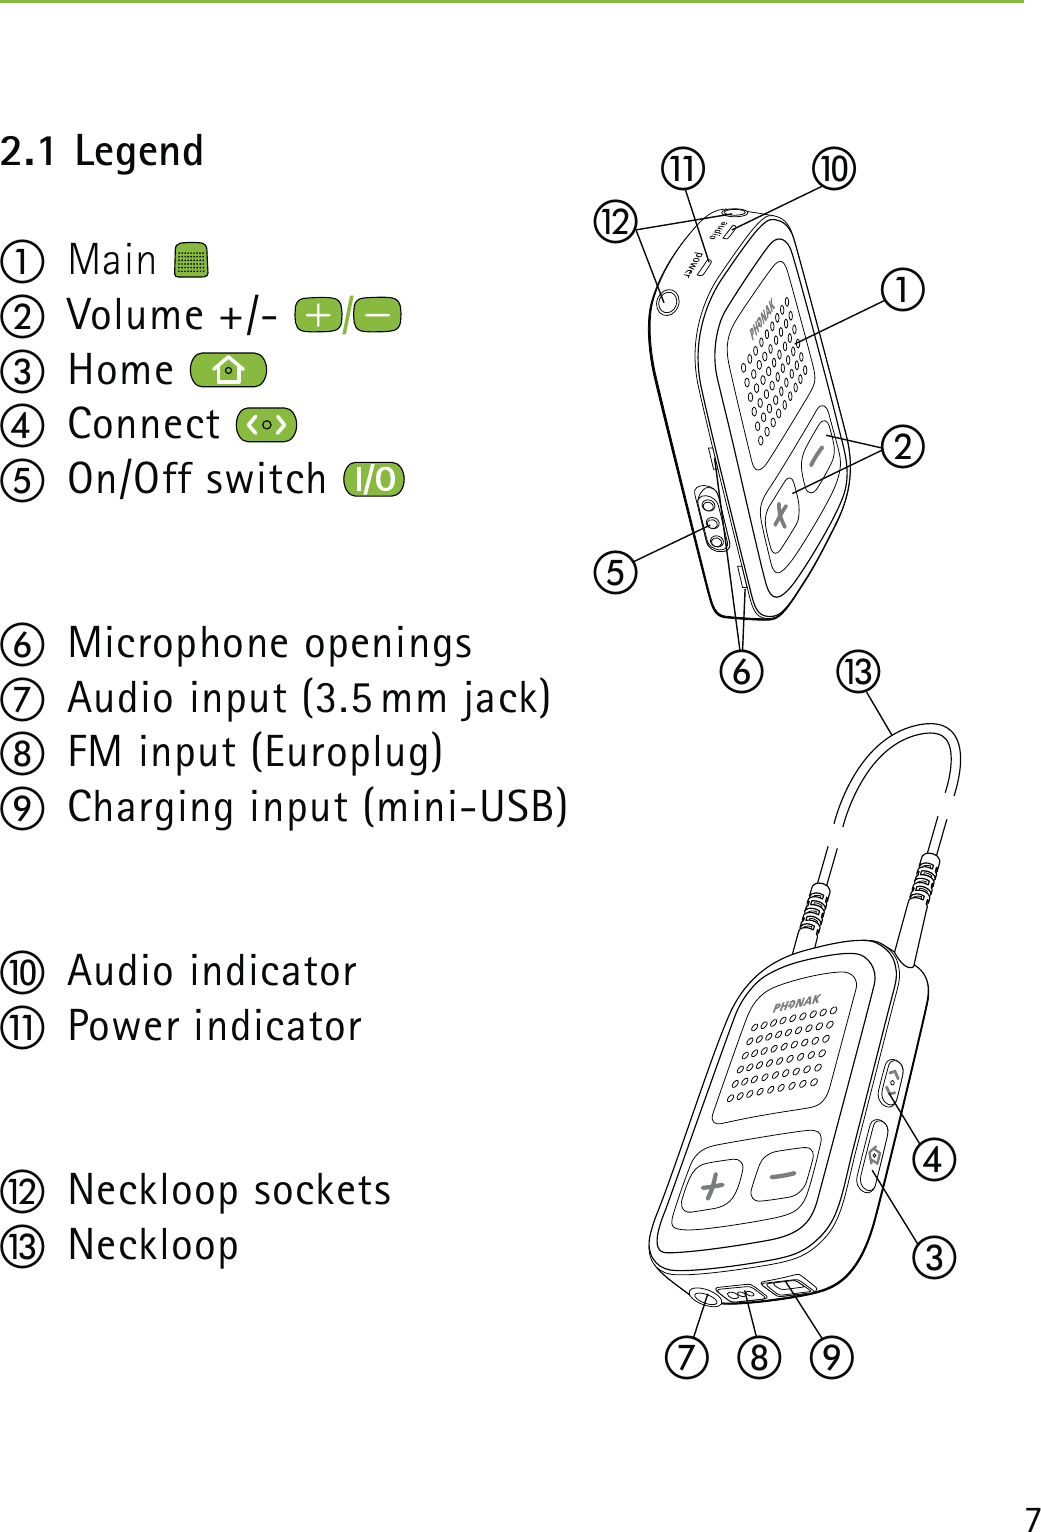 72.1 Legend햲 Main    햳 Volume +/- 햴 Home 햵 Connect 햶 On/Off switch 햷 Microphone openings햸  Audio input (3.5 mm jack)햹  FM input (Europlug)햺  Charging input (mini-USB)햻 Audio indicator햽 Power indicator햾 Neckloop sockets 햿 Neckloop햷햲햳햴햶햻햽햾햵햿햸햹햺